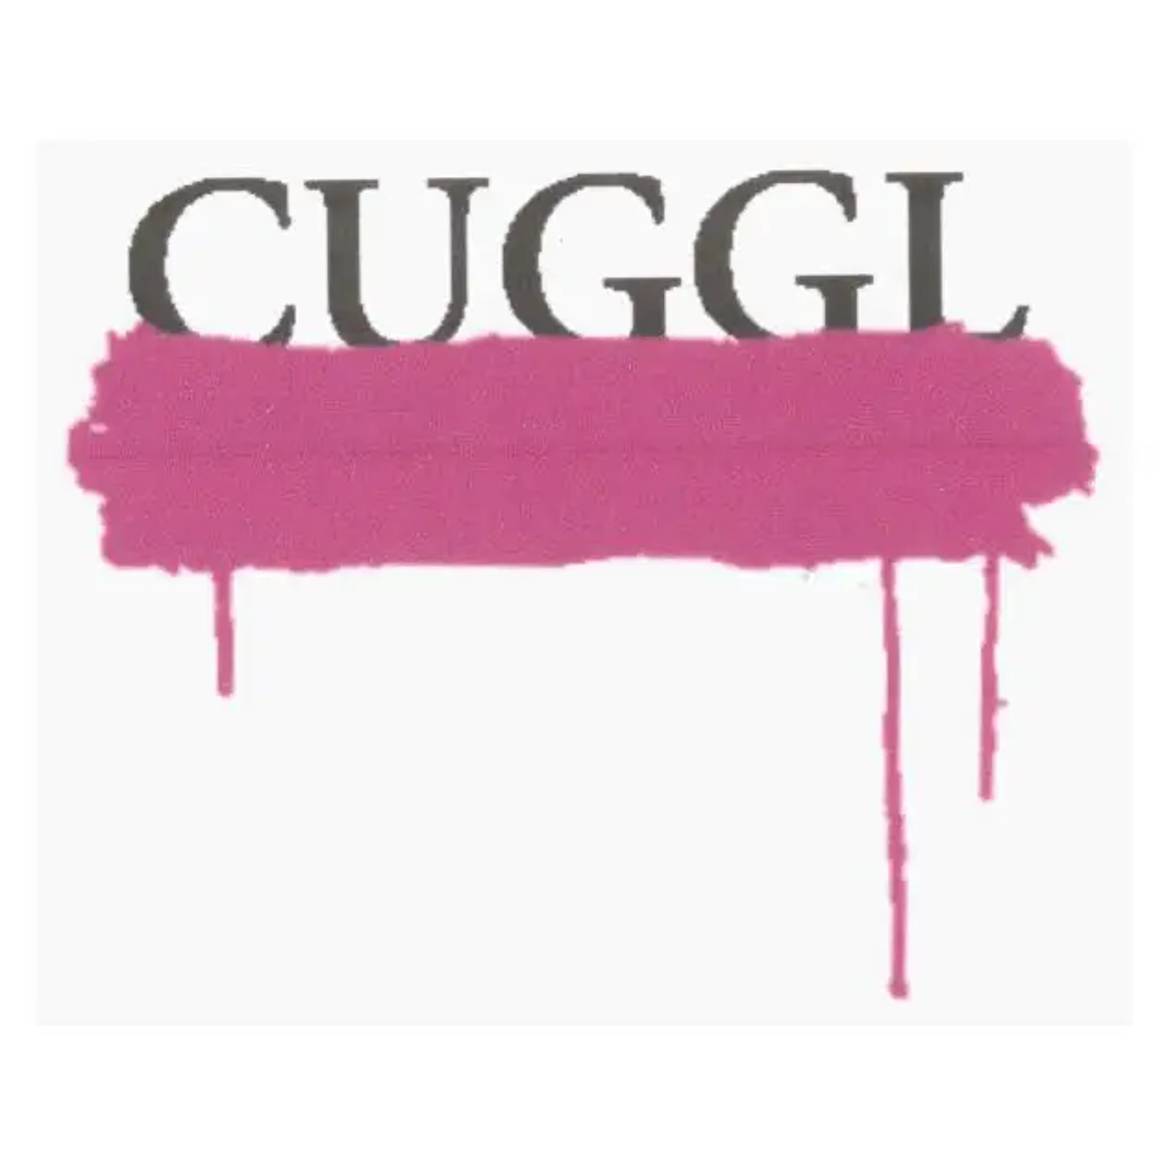 Cuggl trademark via Jpo